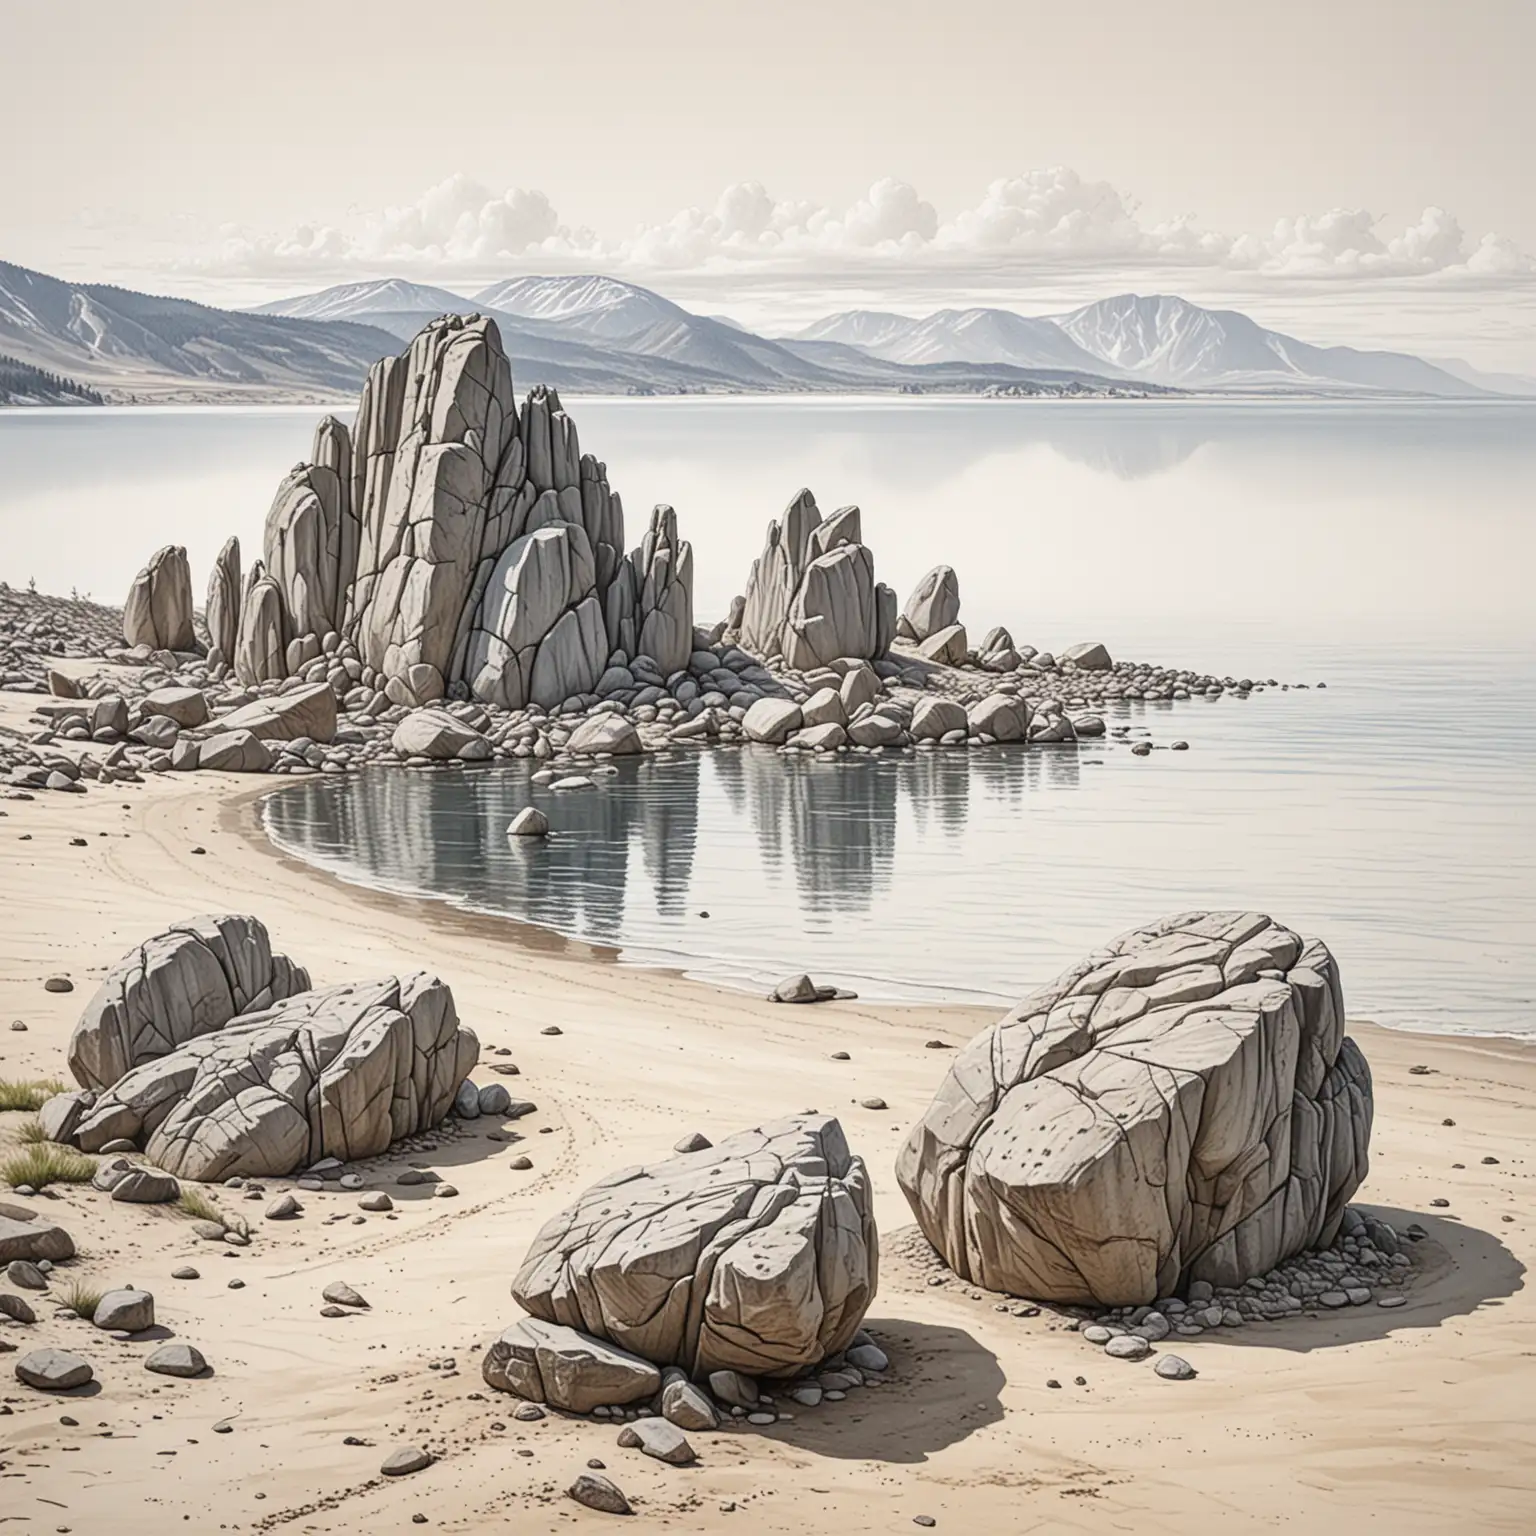 гора состоящая из двух больших глыб слева на  изогнутой песчаной косе берега острова Ольхон озера Байкал, вдали горизонт, рисунок  на белом фоне в стиле карандашной графики, максимально детализированный